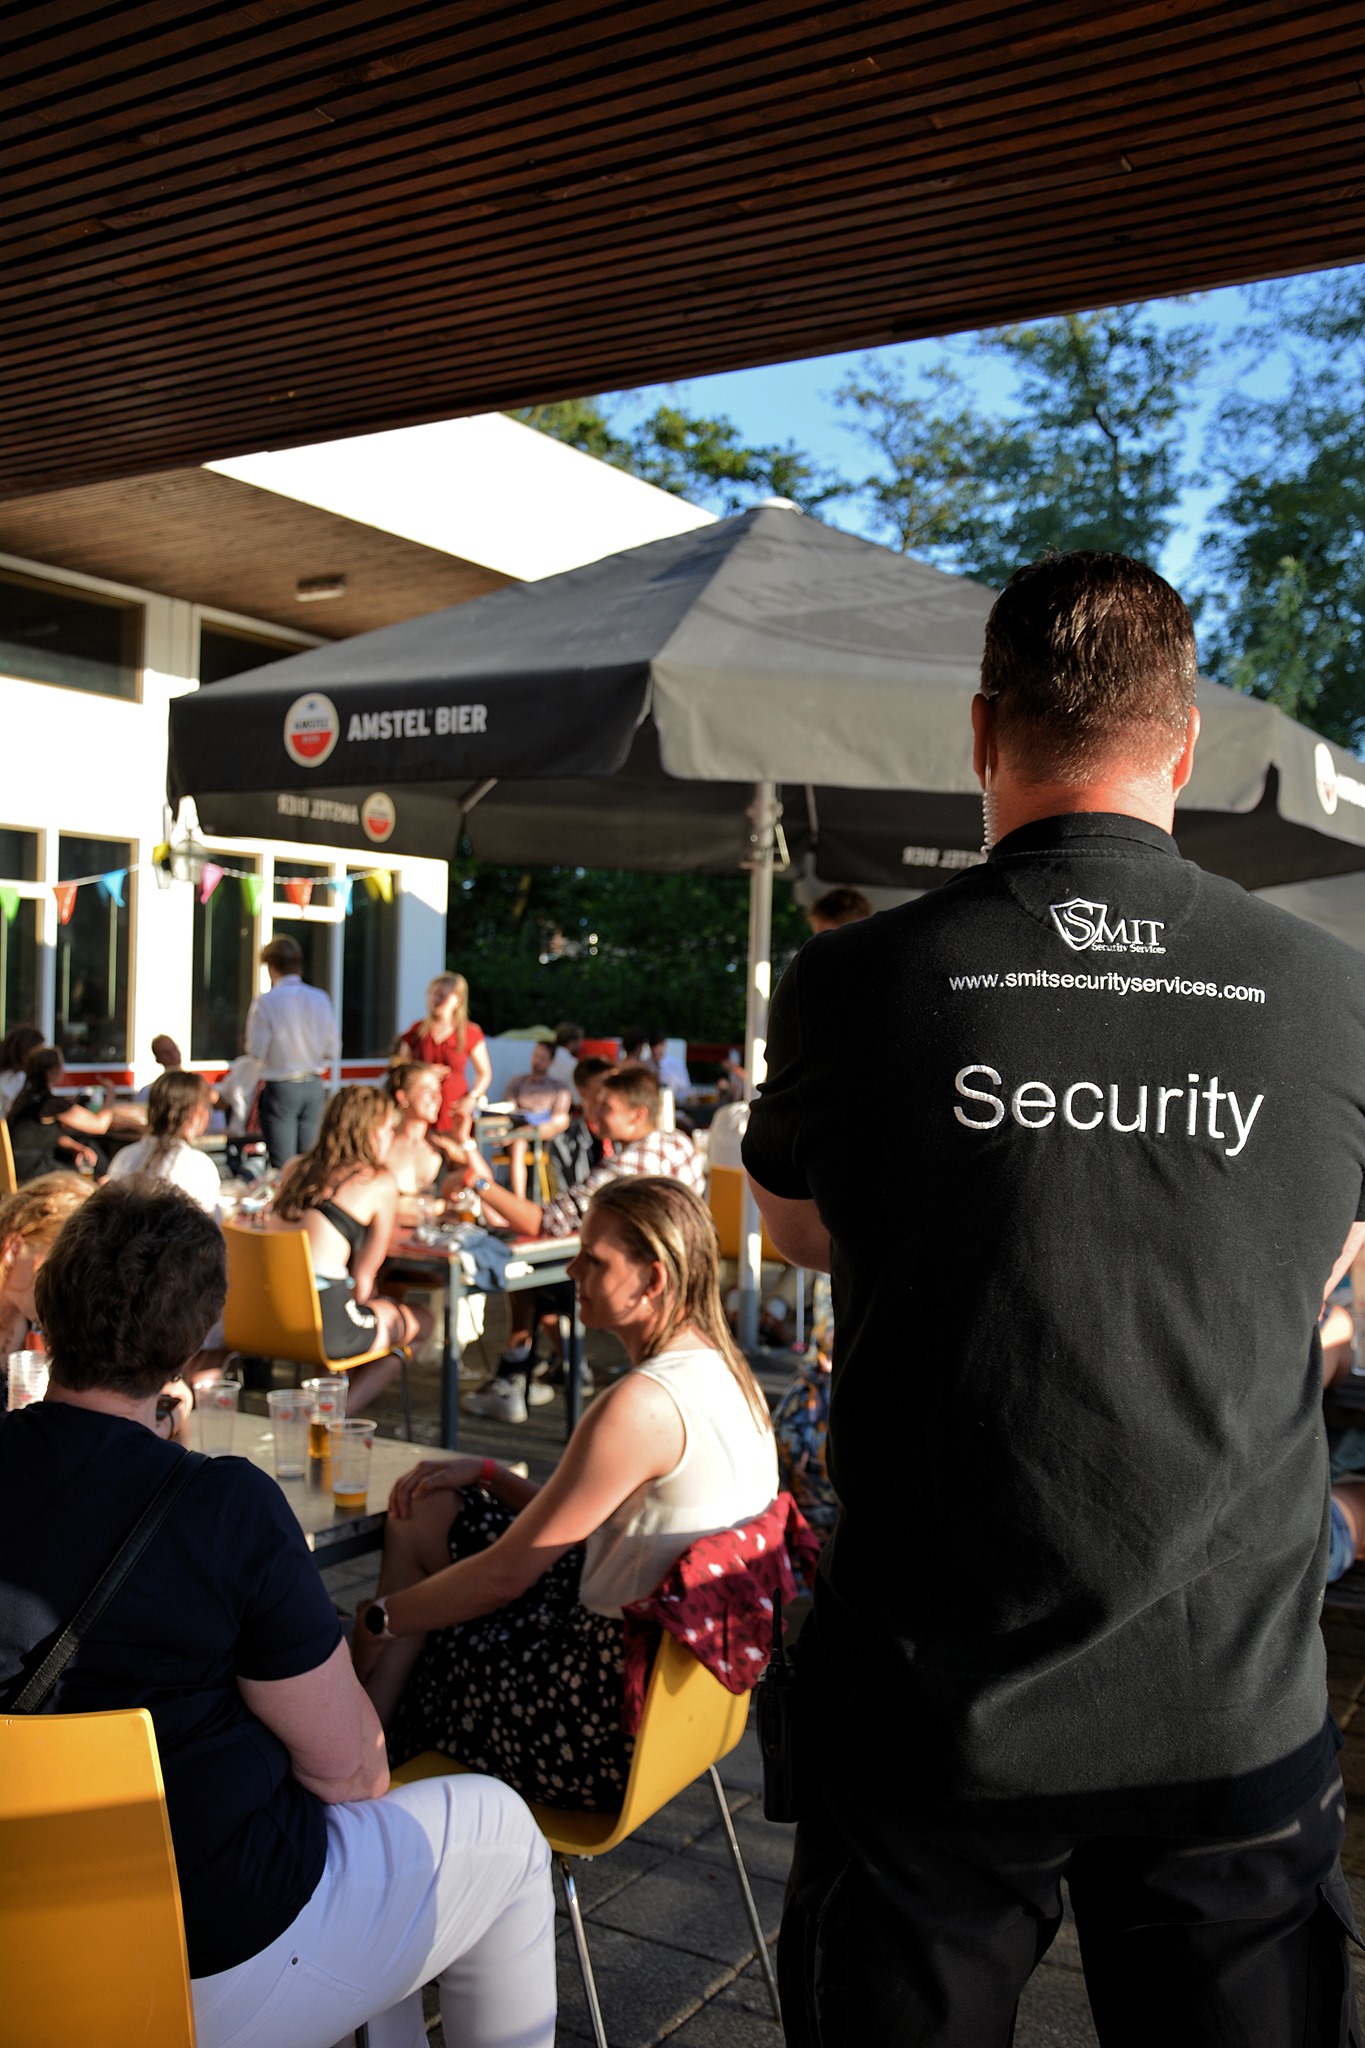 Evenementen beveiliging, bewaker Smit Security bij restaurant